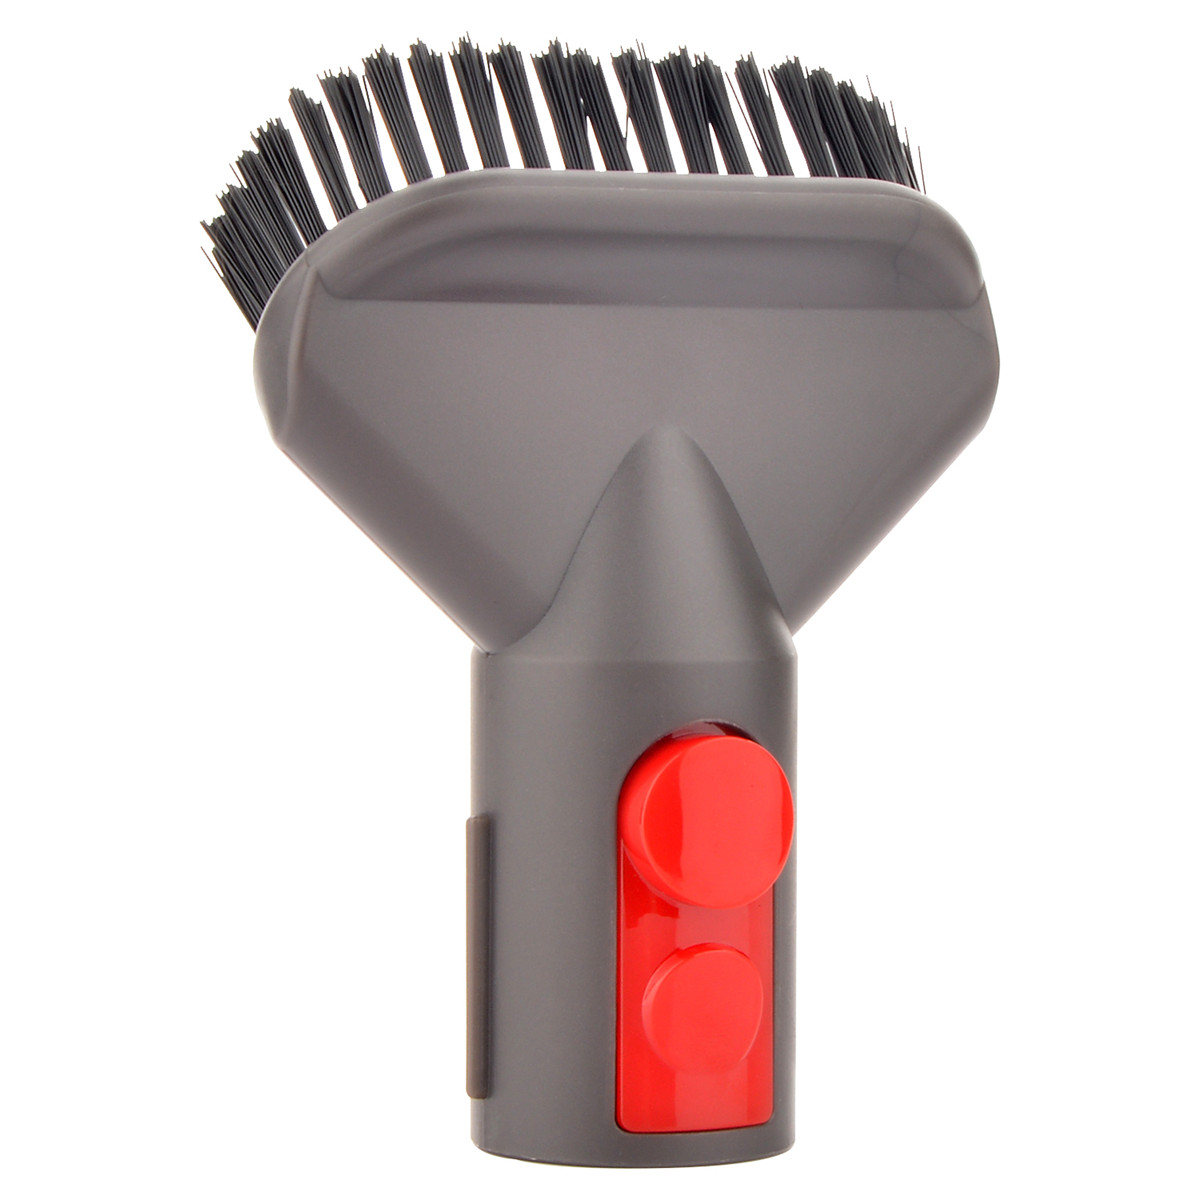 Vacuum Cleaner Brush Head Set for For Dyson V7 V8 V10 Storage Rack Cleaning Brush 38